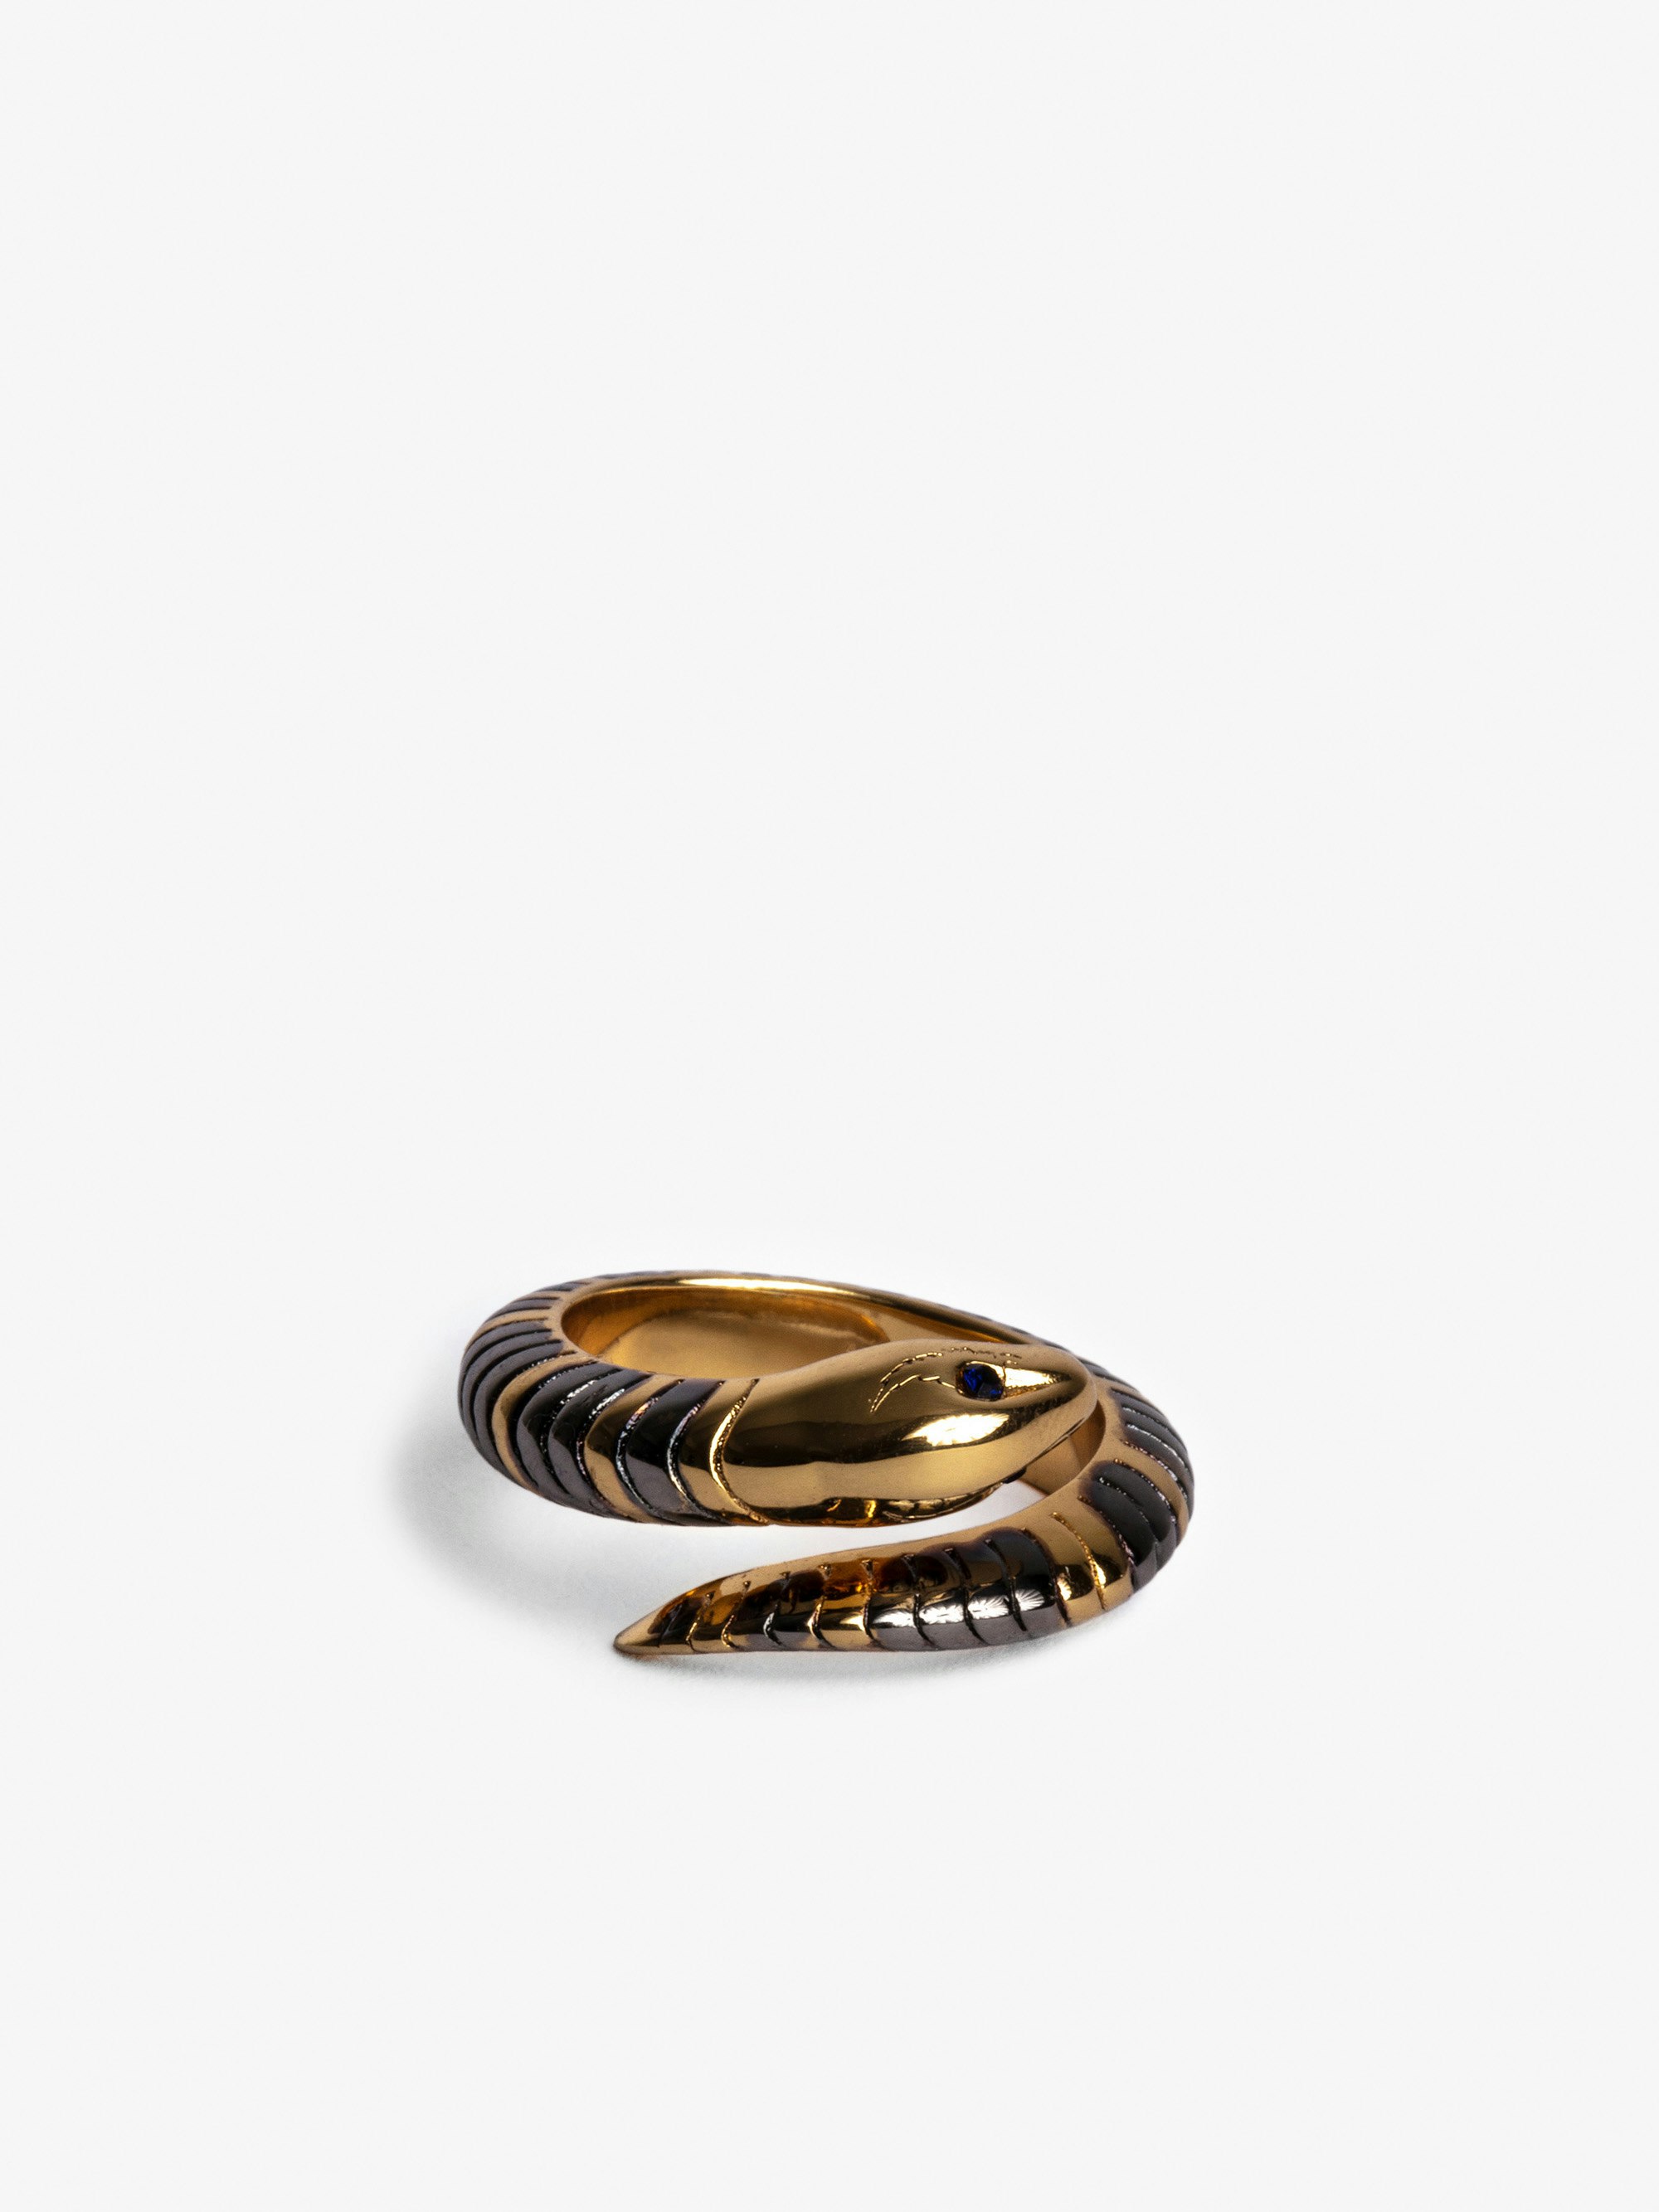 Ring Snake - Ring mit Schlange aus goldfarbenem Messing.